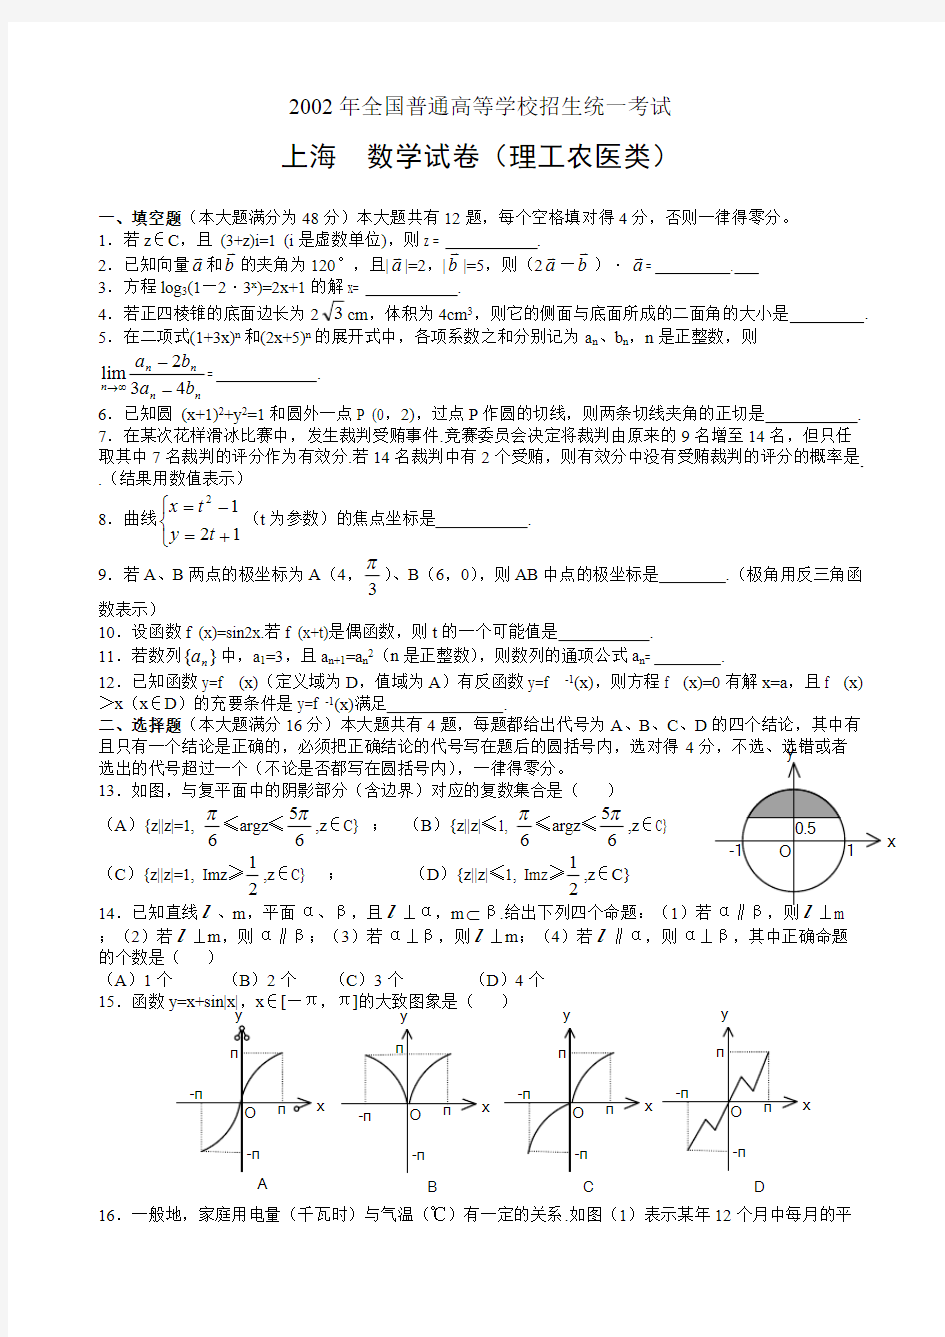 (完整)2002年上海高考理科数学试题及答案,推荐文档